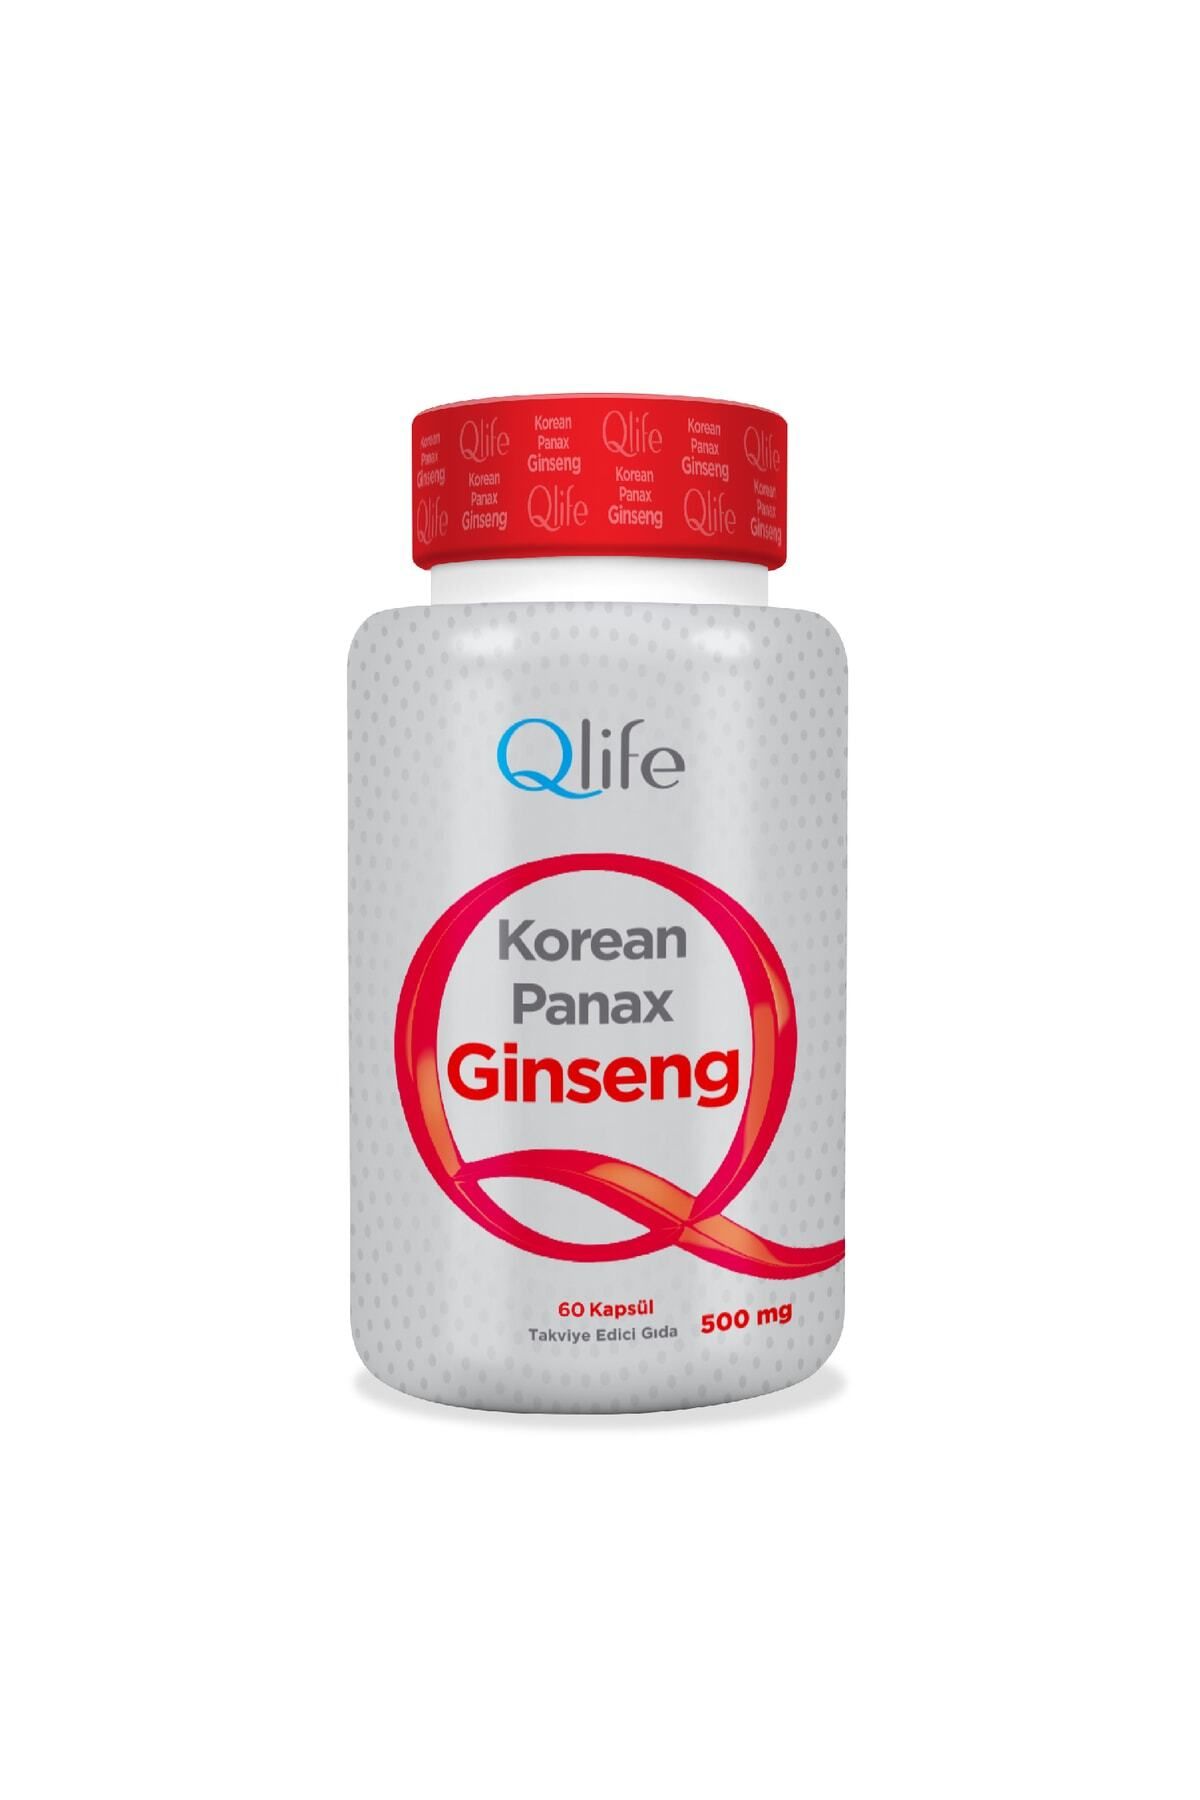 Q LİFE Qlife Korean Panax Ginseng 500 Mg 60 Kapsül